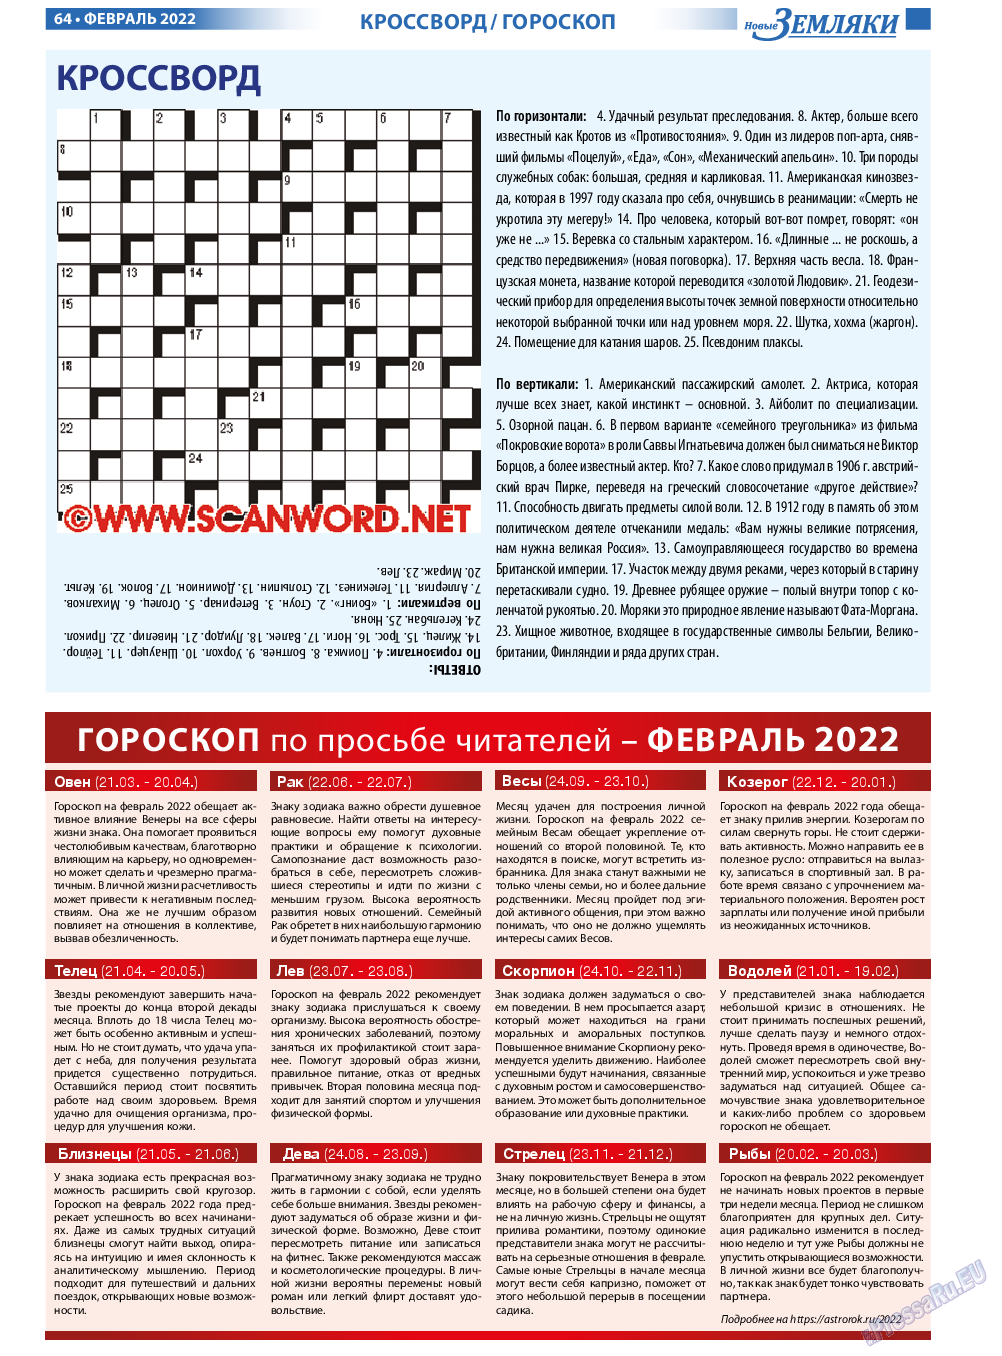 Новые Земляки, газета. 2022 №2 стр.64